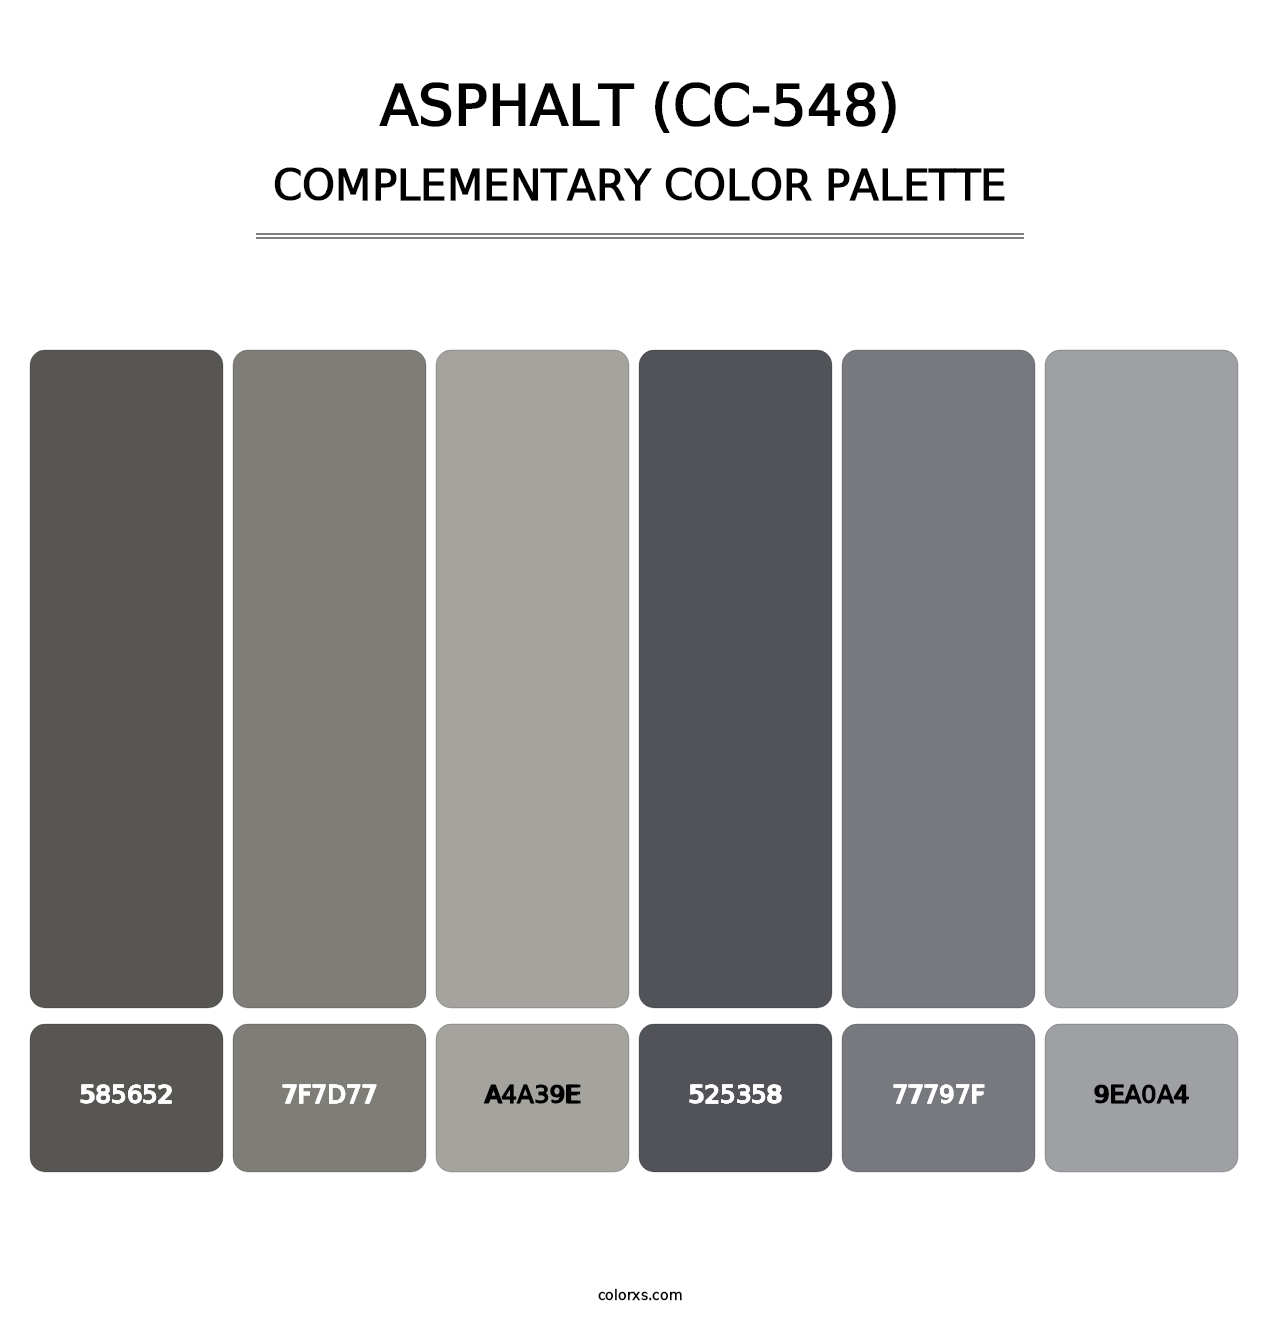 Asphalt (CC-548) - Complementary Color Palette